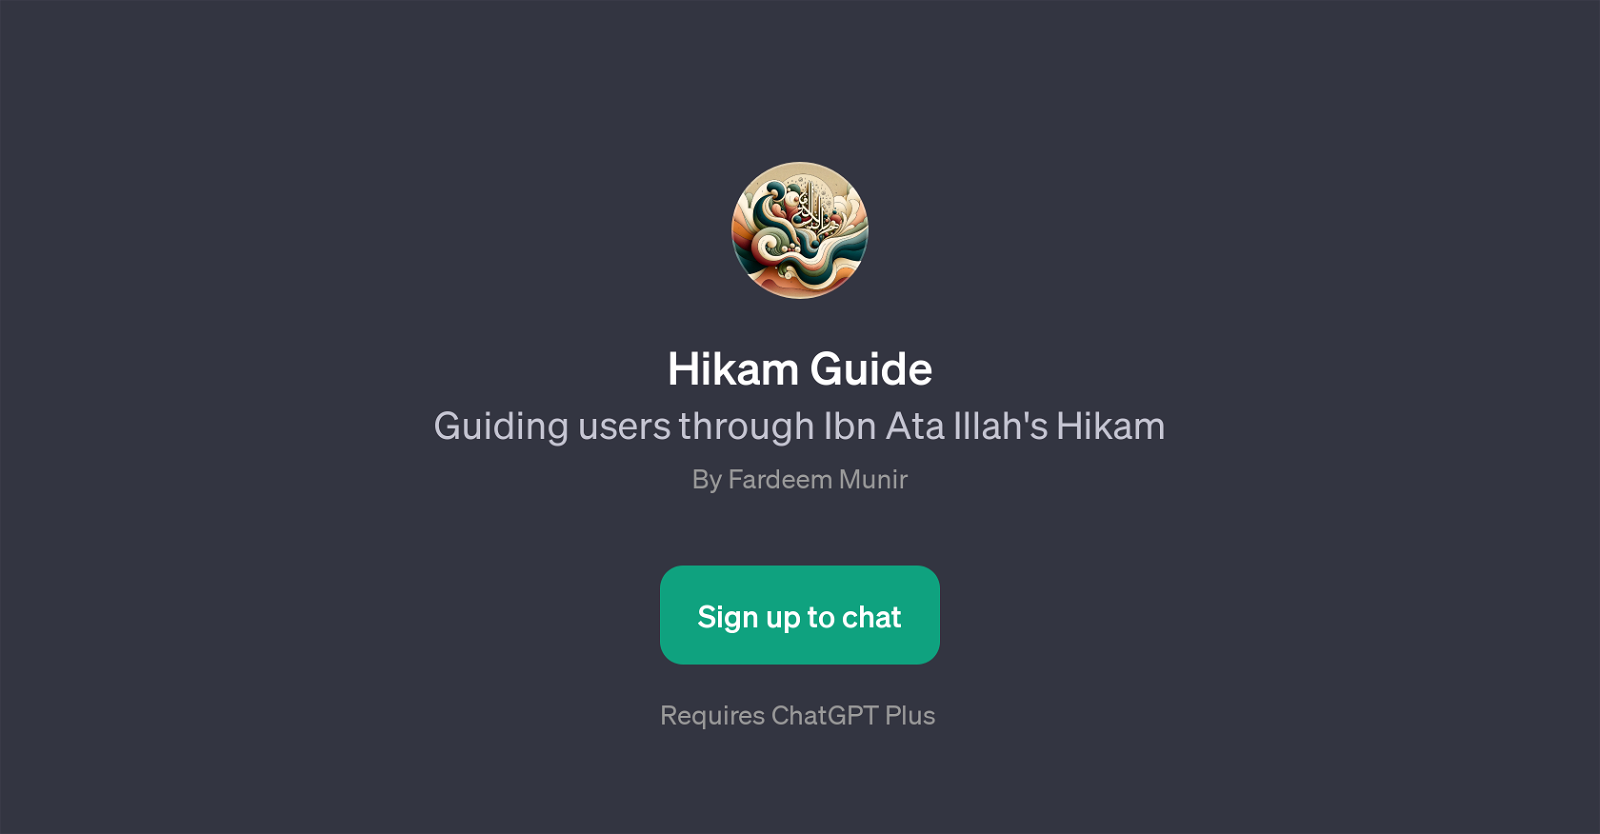 Hikam Guide website